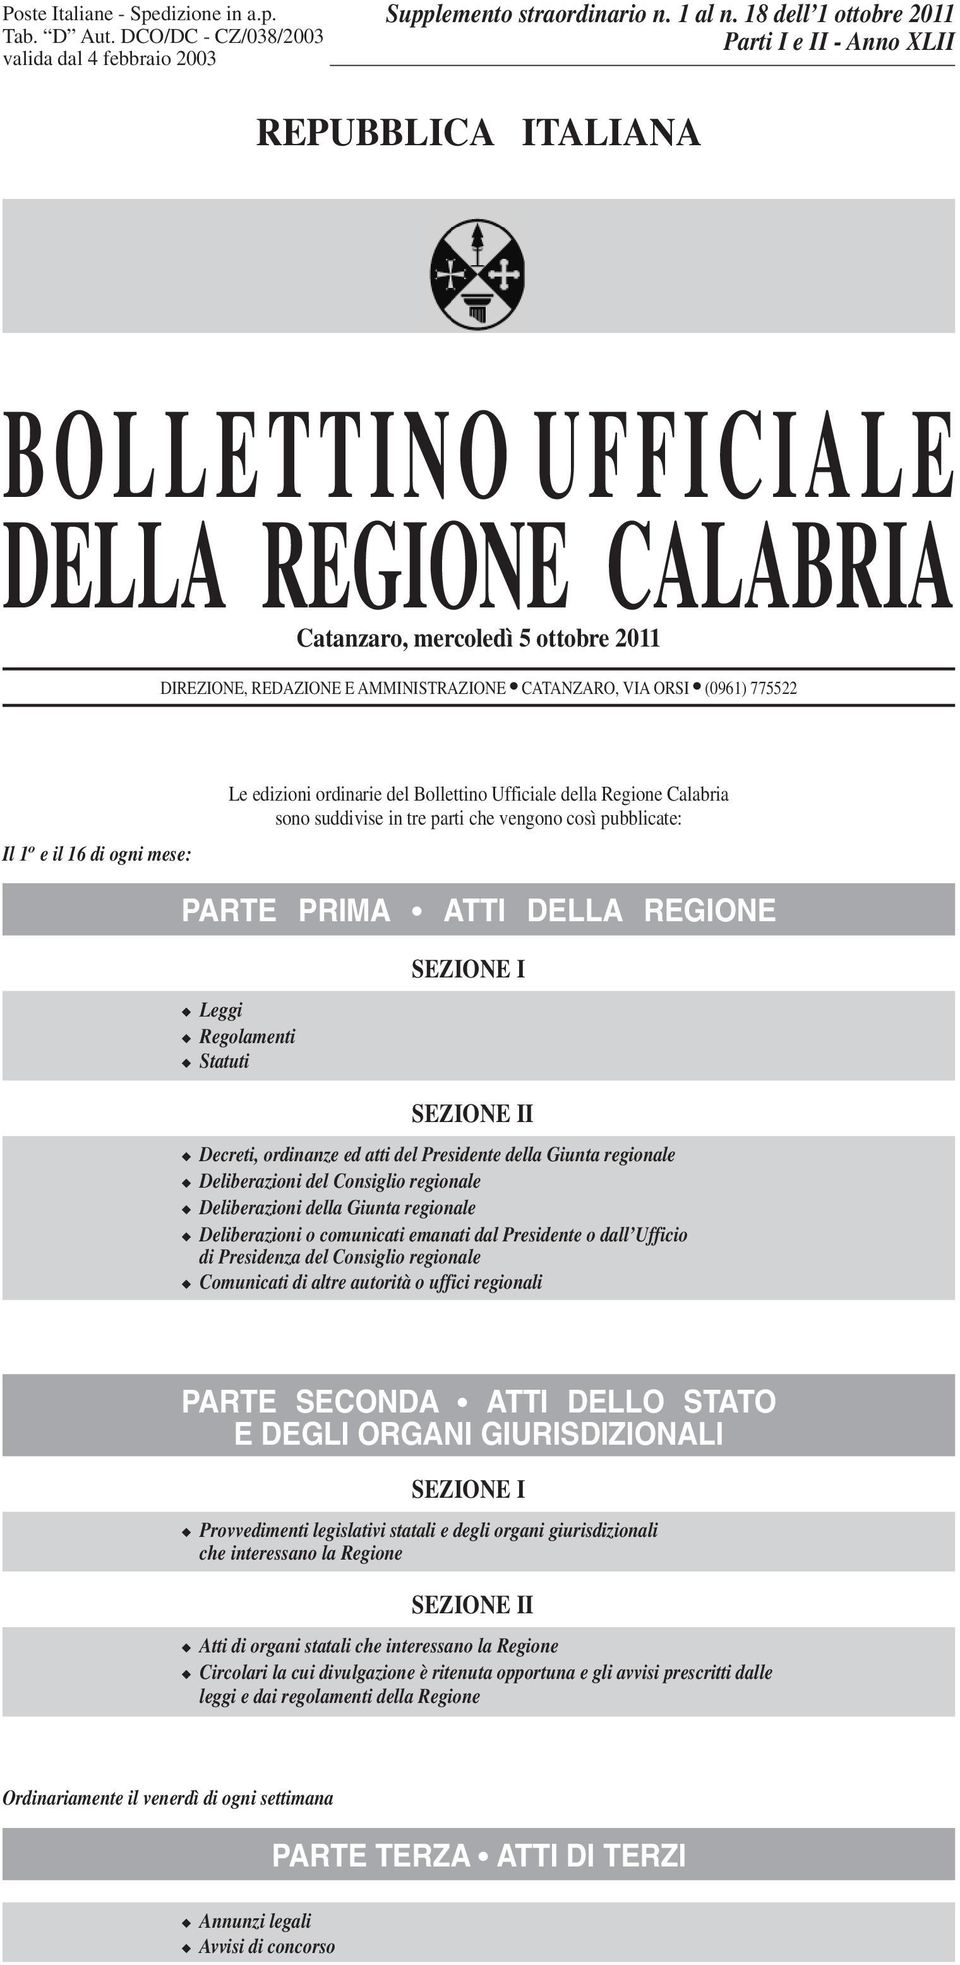 VIA ORSI (0961) 775522 Il 1 o e il 16 di ogni mese: Le edizioni ordinarie del Bollettino Ufficiale della Regione Calabria sono suddivise in tre parti che vengono così pubblicate: PARTE PRIMA ATTI